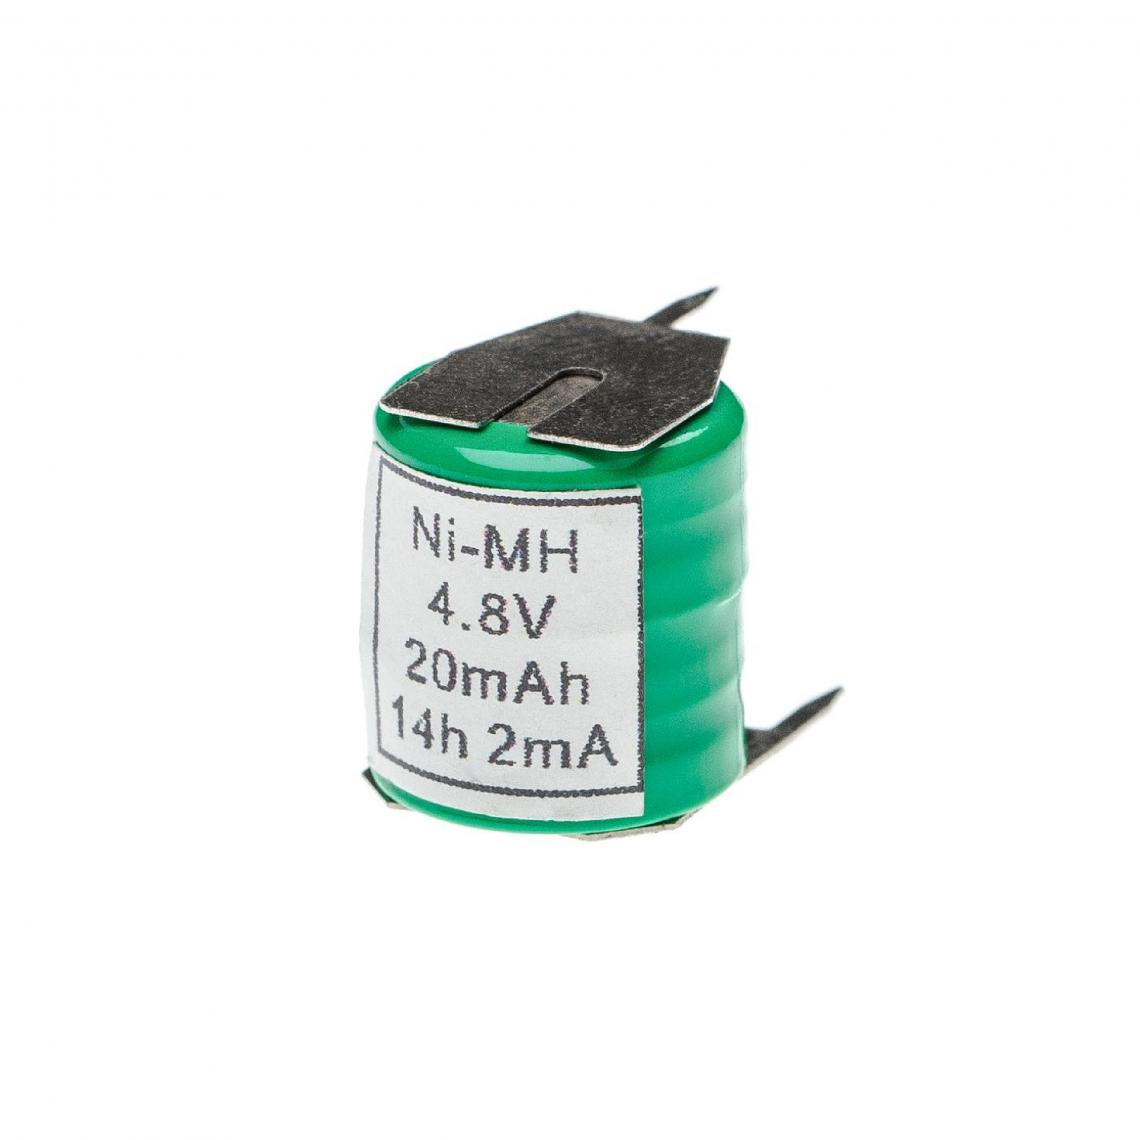 Vhbw - vhbw Batterie remplacement pour 4/V15H pour modèlisme RC (20mAh, 4,8V, NiMH), avec connexion à 3 broches - Autre appareil de mesure